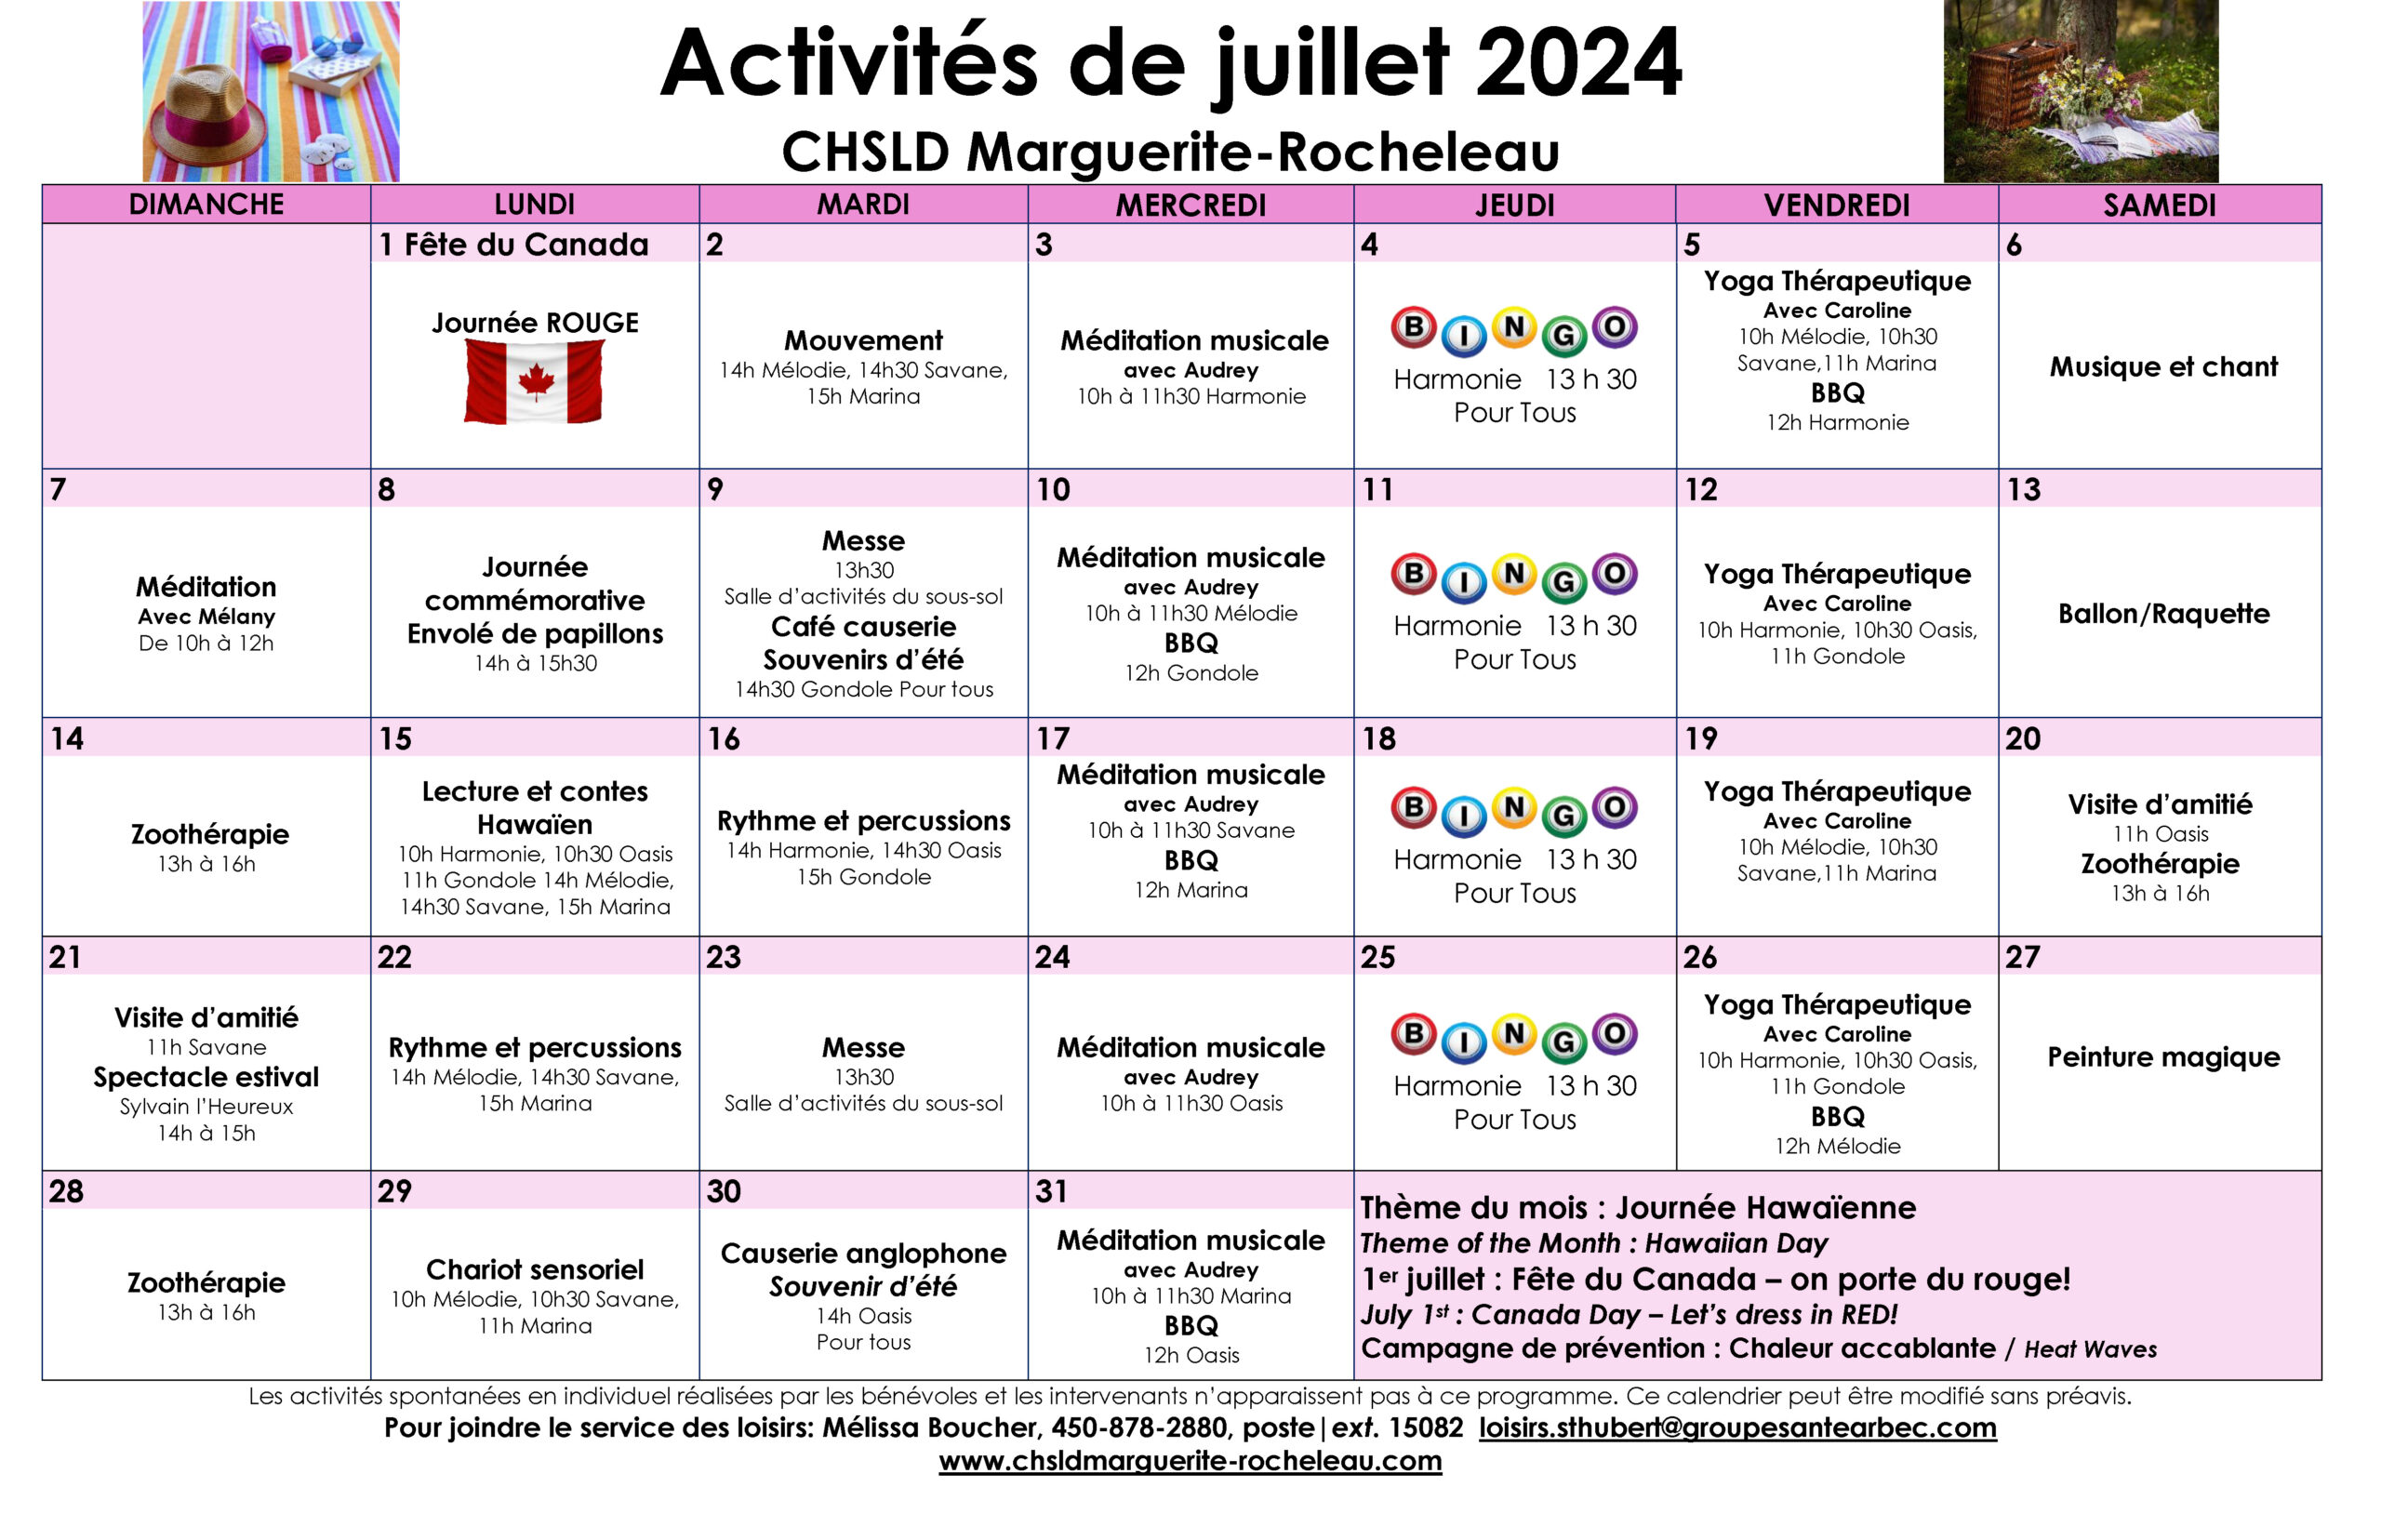 Calendrier des loisirs du mois de juillet 2024 pour les résidents du CHSLD Marguerite-Rocheleau